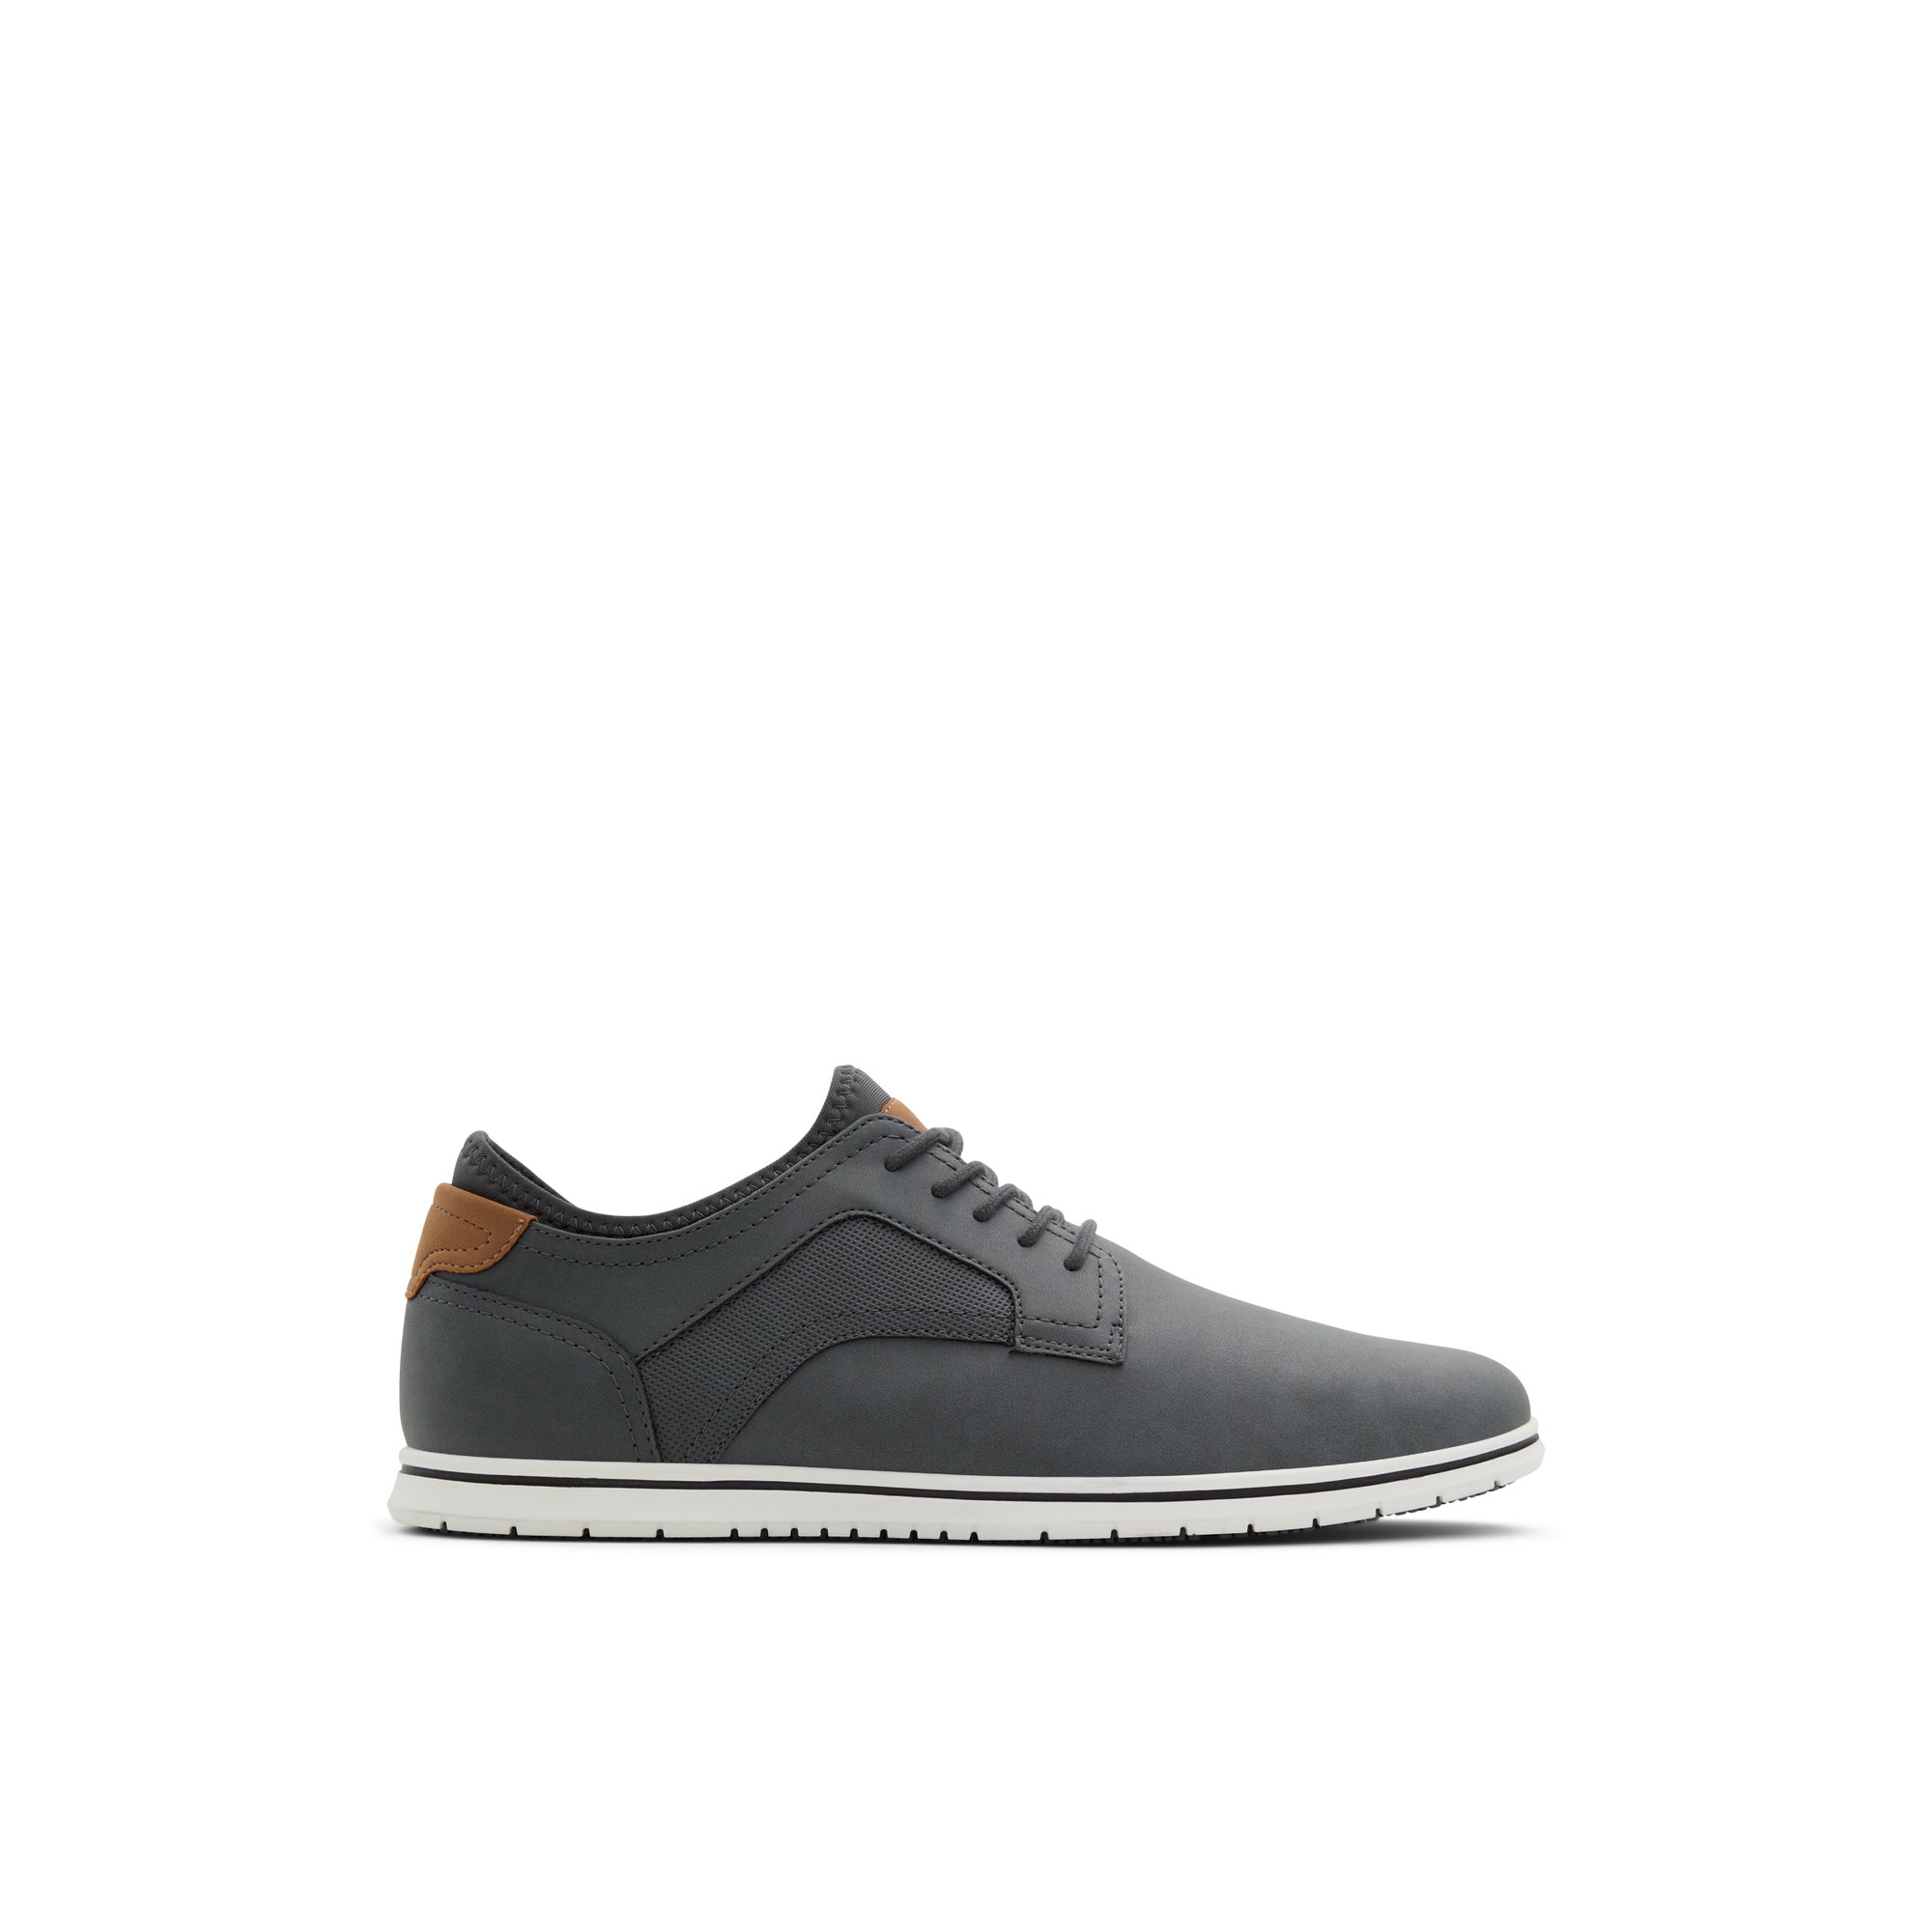 ALDO Drymos - Men's Casual Shoes - Grey